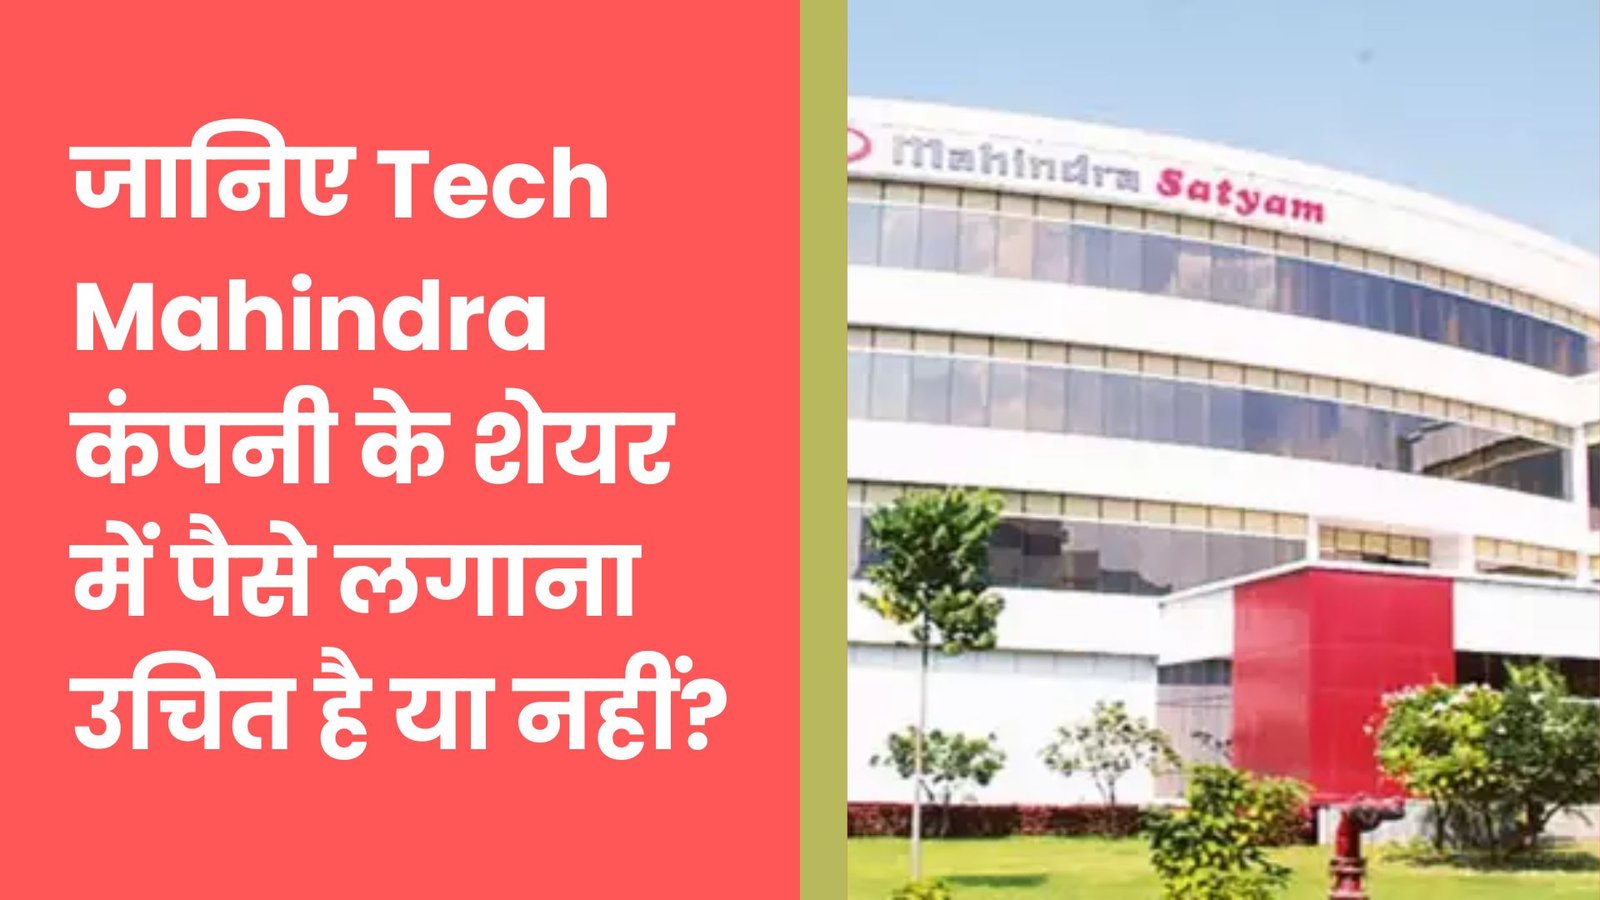 जानिए Tech Mahindra कंपनी के शेयर में पैसे लगाना उचित है या नहीं?